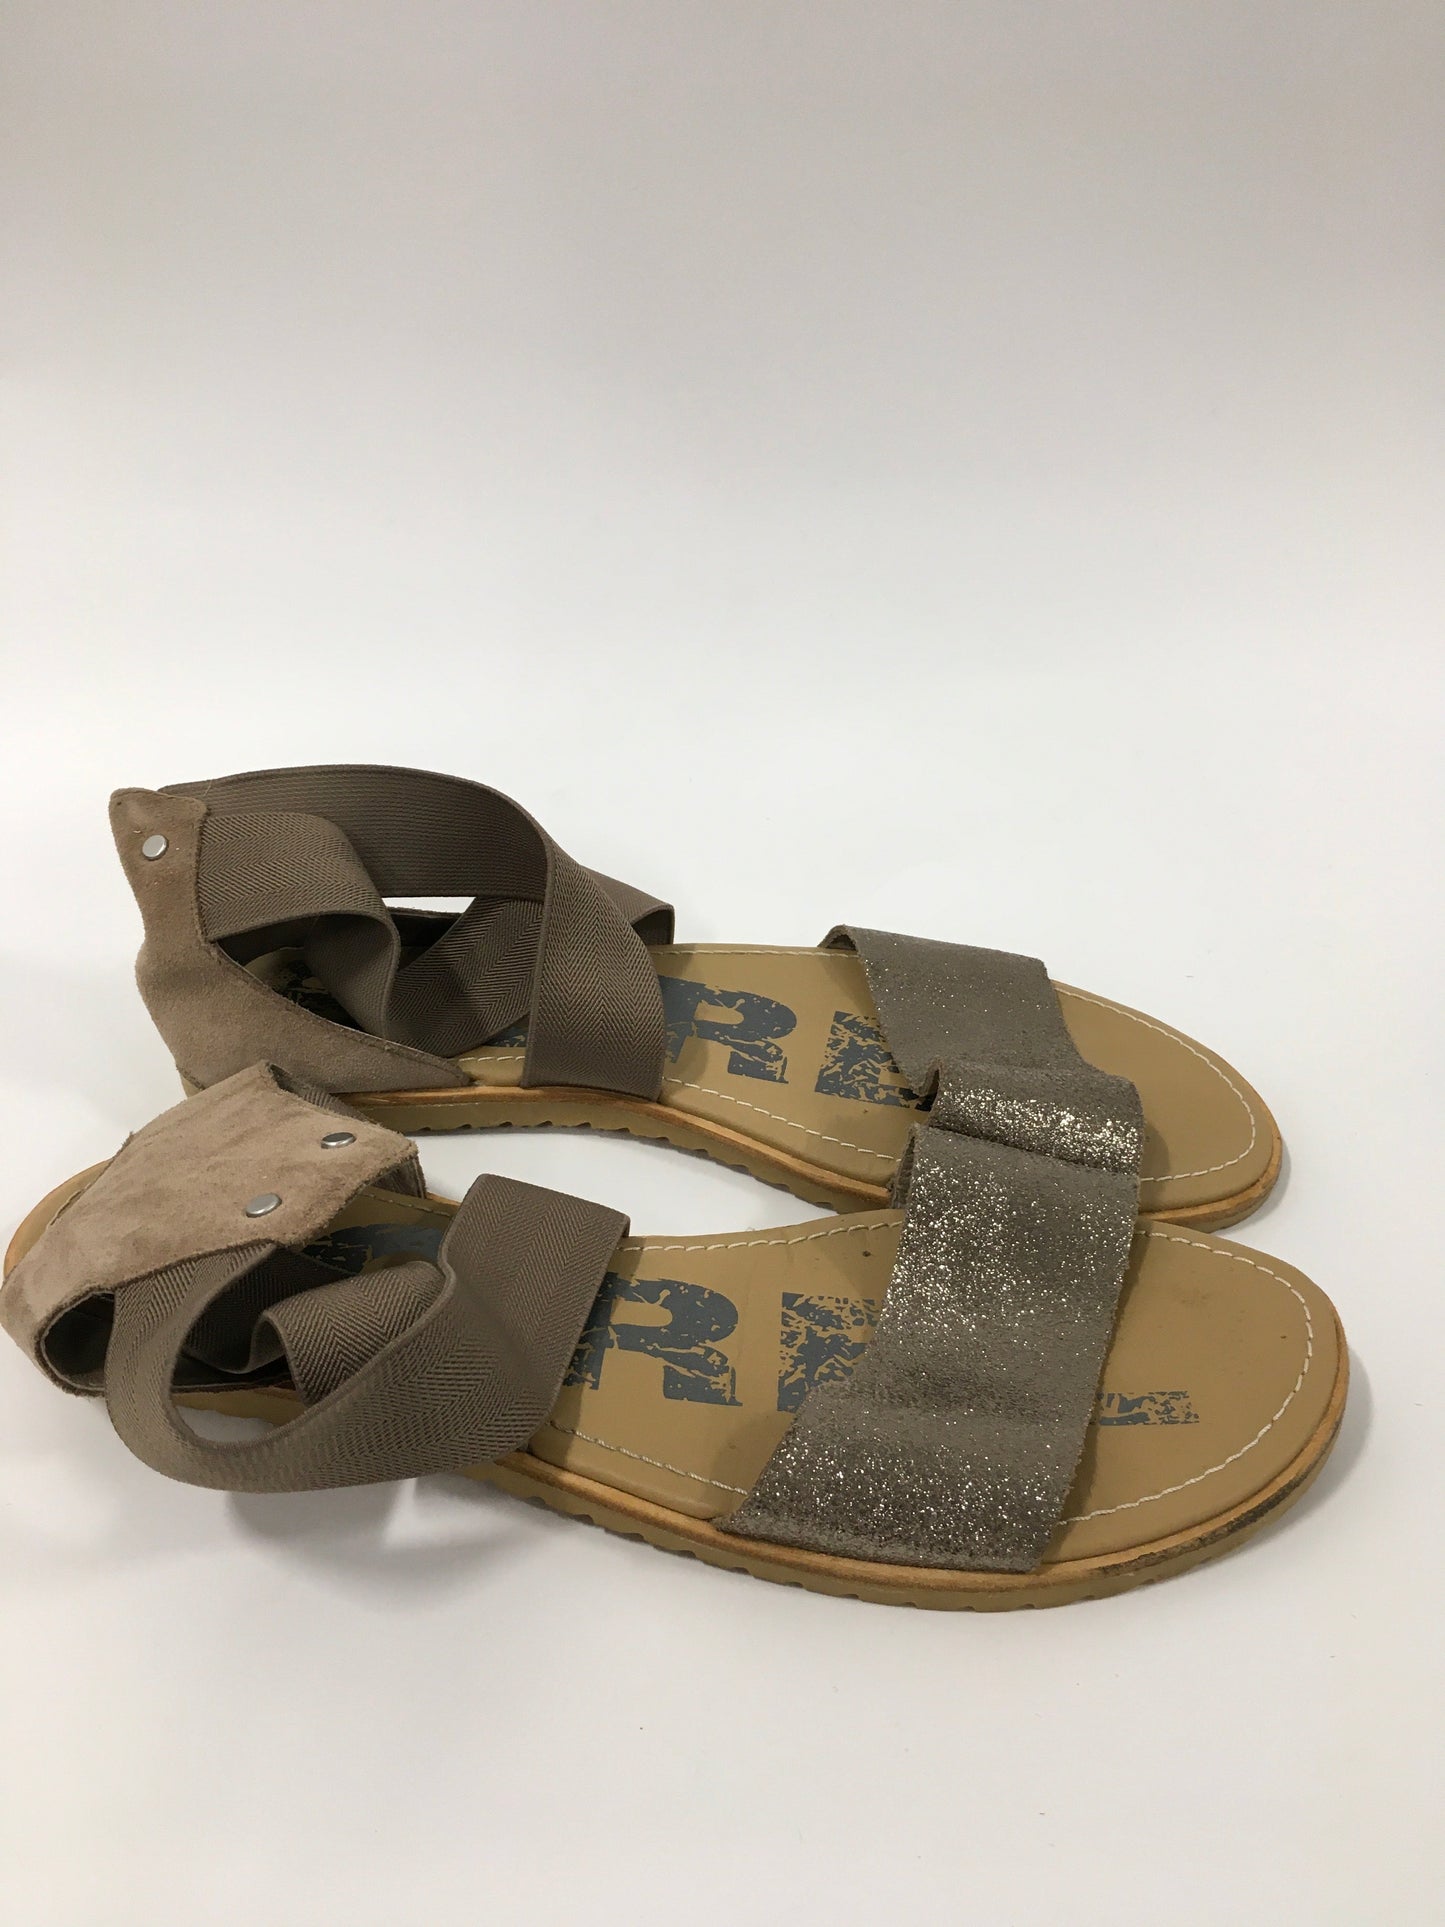 Bronze Sandals Flats Sorel, Size 11